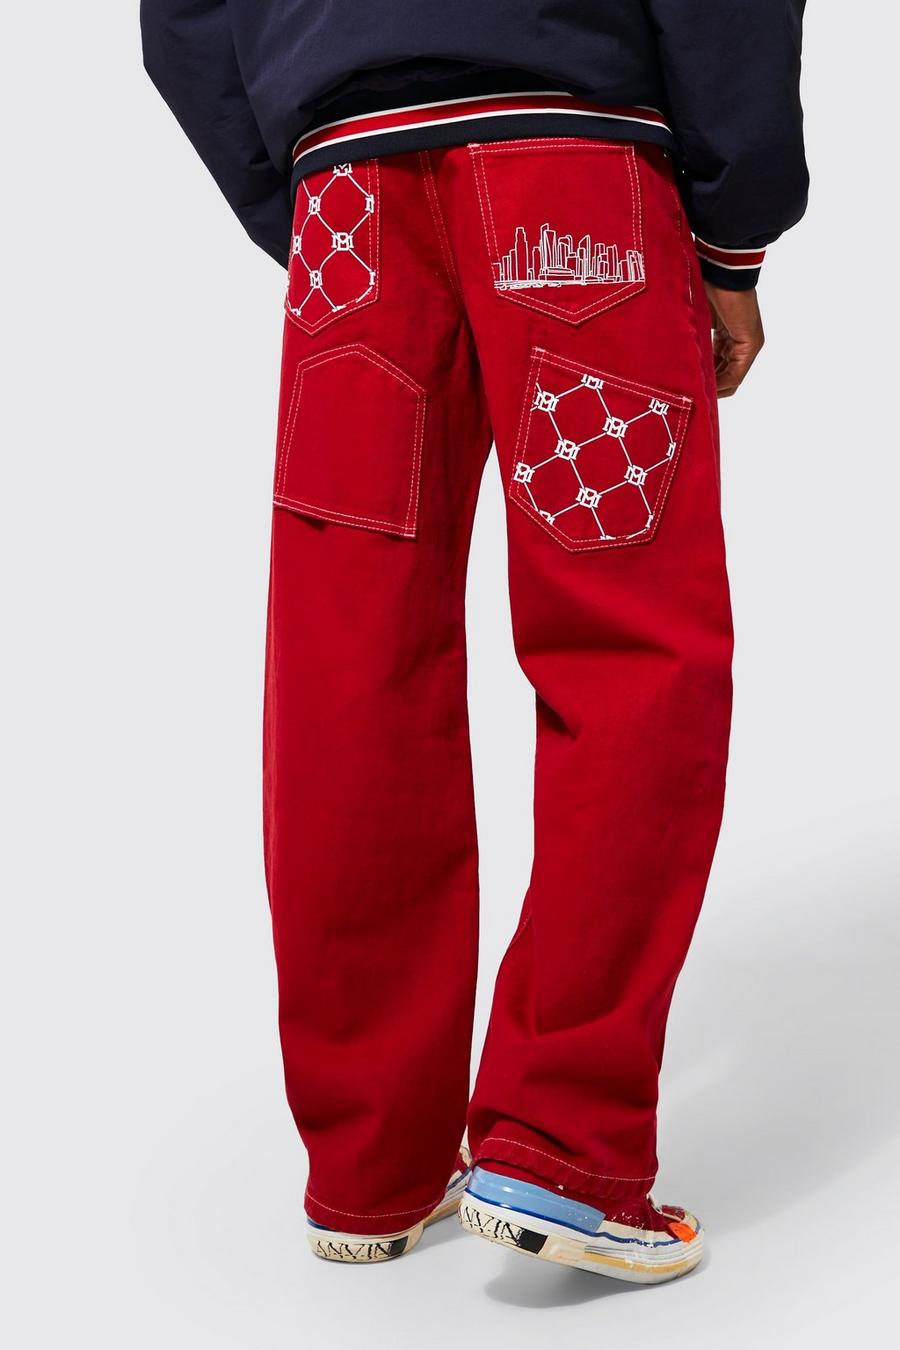 Lockere Jeans mit Stickerei, Red rot